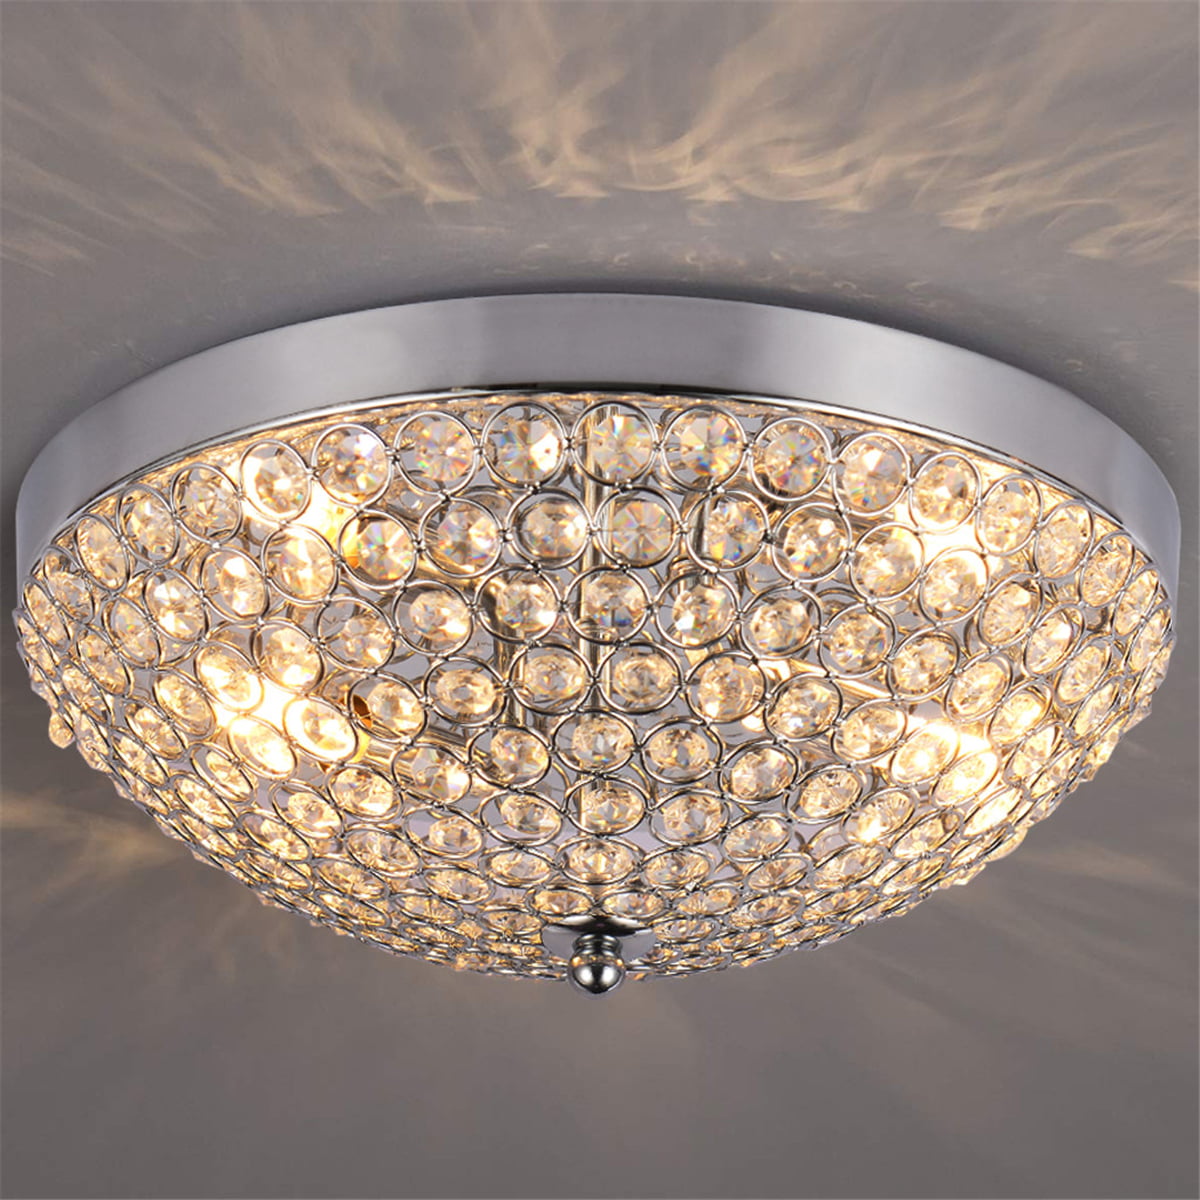 15 Watt LED Ceiling Light residential dinning room lighting leaves lamp chrome 